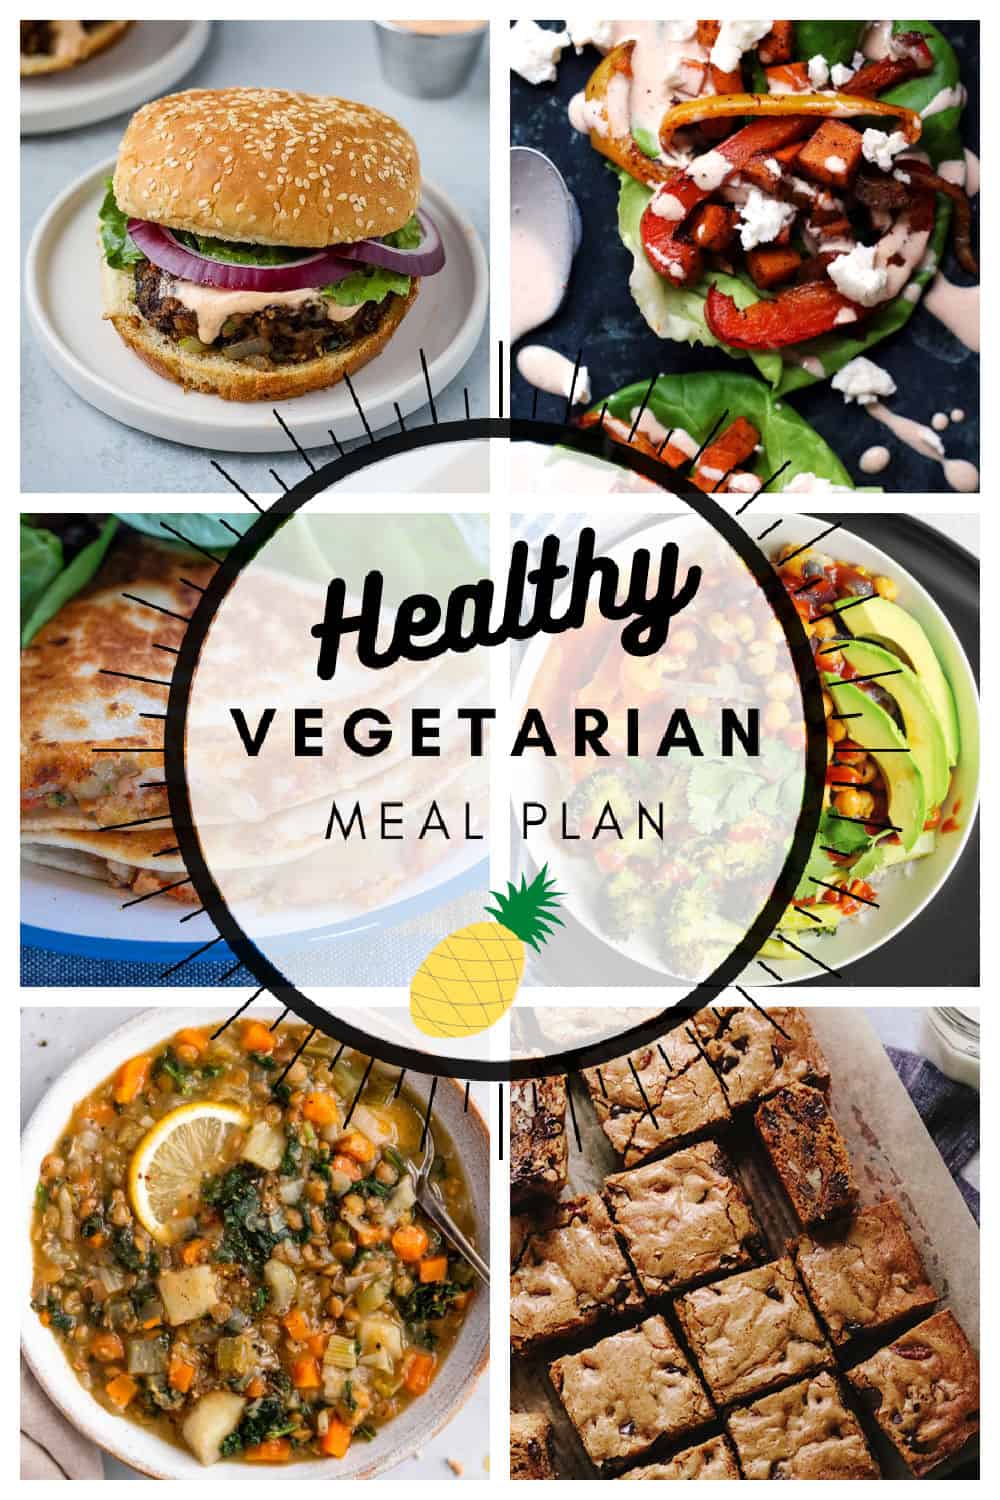 Healthy vegetarian meal plan week 7/52